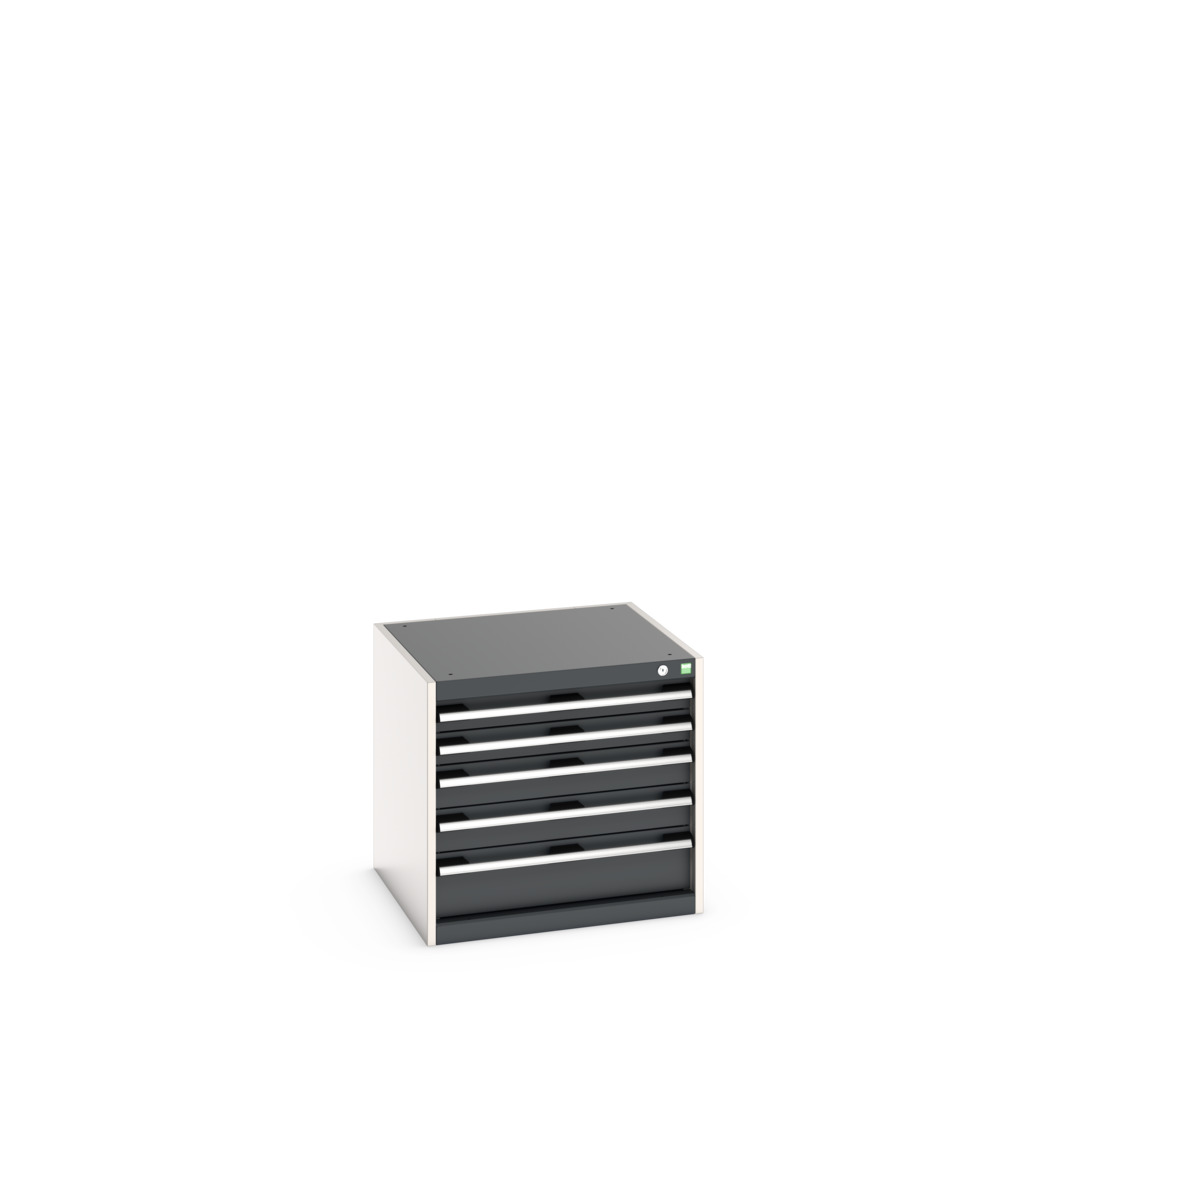 40019152.19V - cubio drawer cabinet